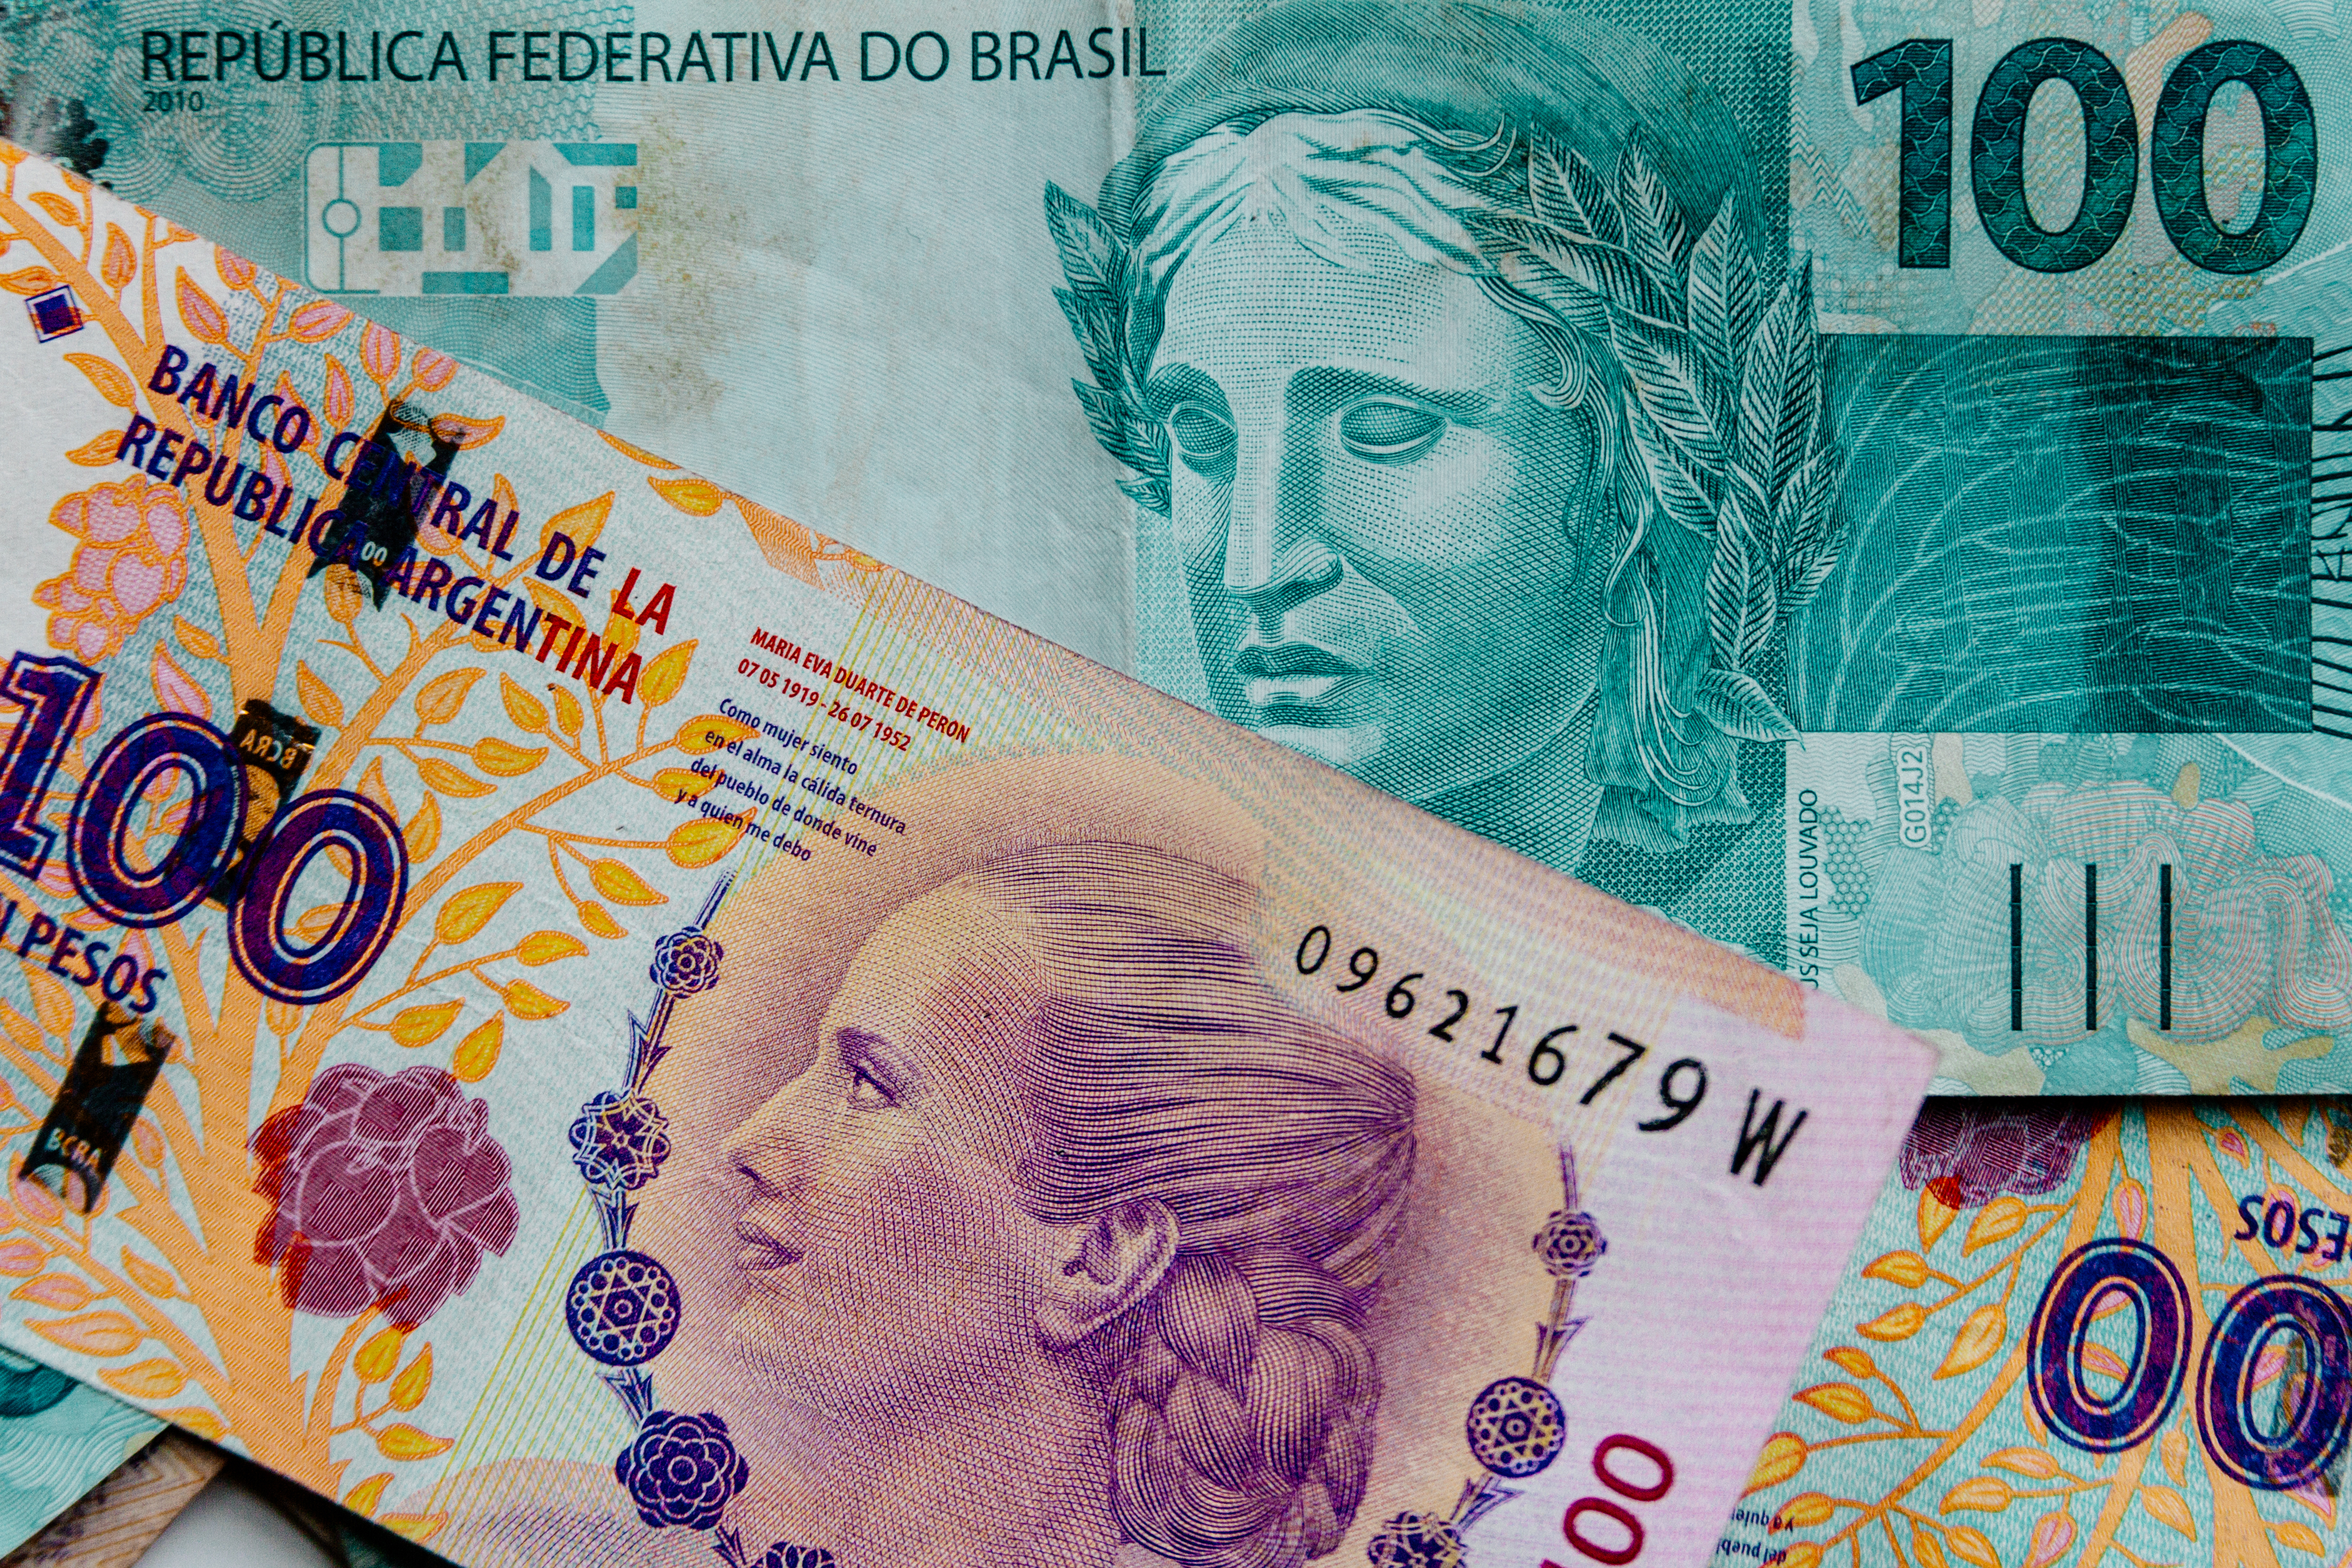 FT: Бразилия и Аргентина обсуждают создание общей валюты